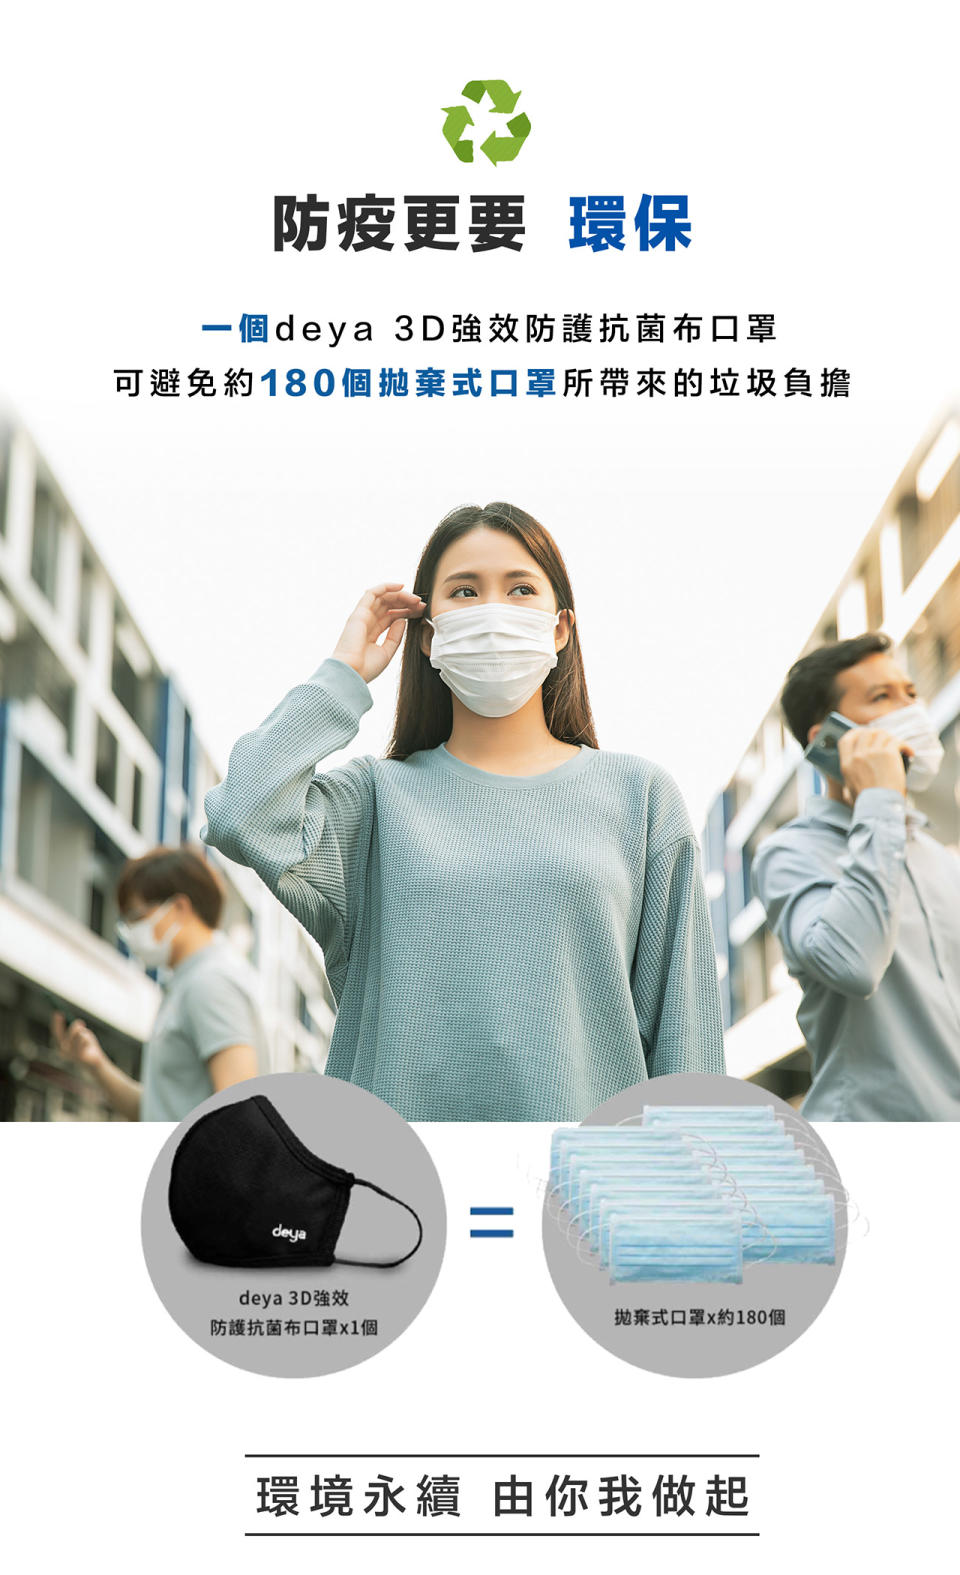 防疫更要環保，deya將抗菌技術用於研發生產布口罩，一個deya 3D強效防護抗菌布口罩，可避免約180個拋棄式口罩所帶來的垃圾負擔。